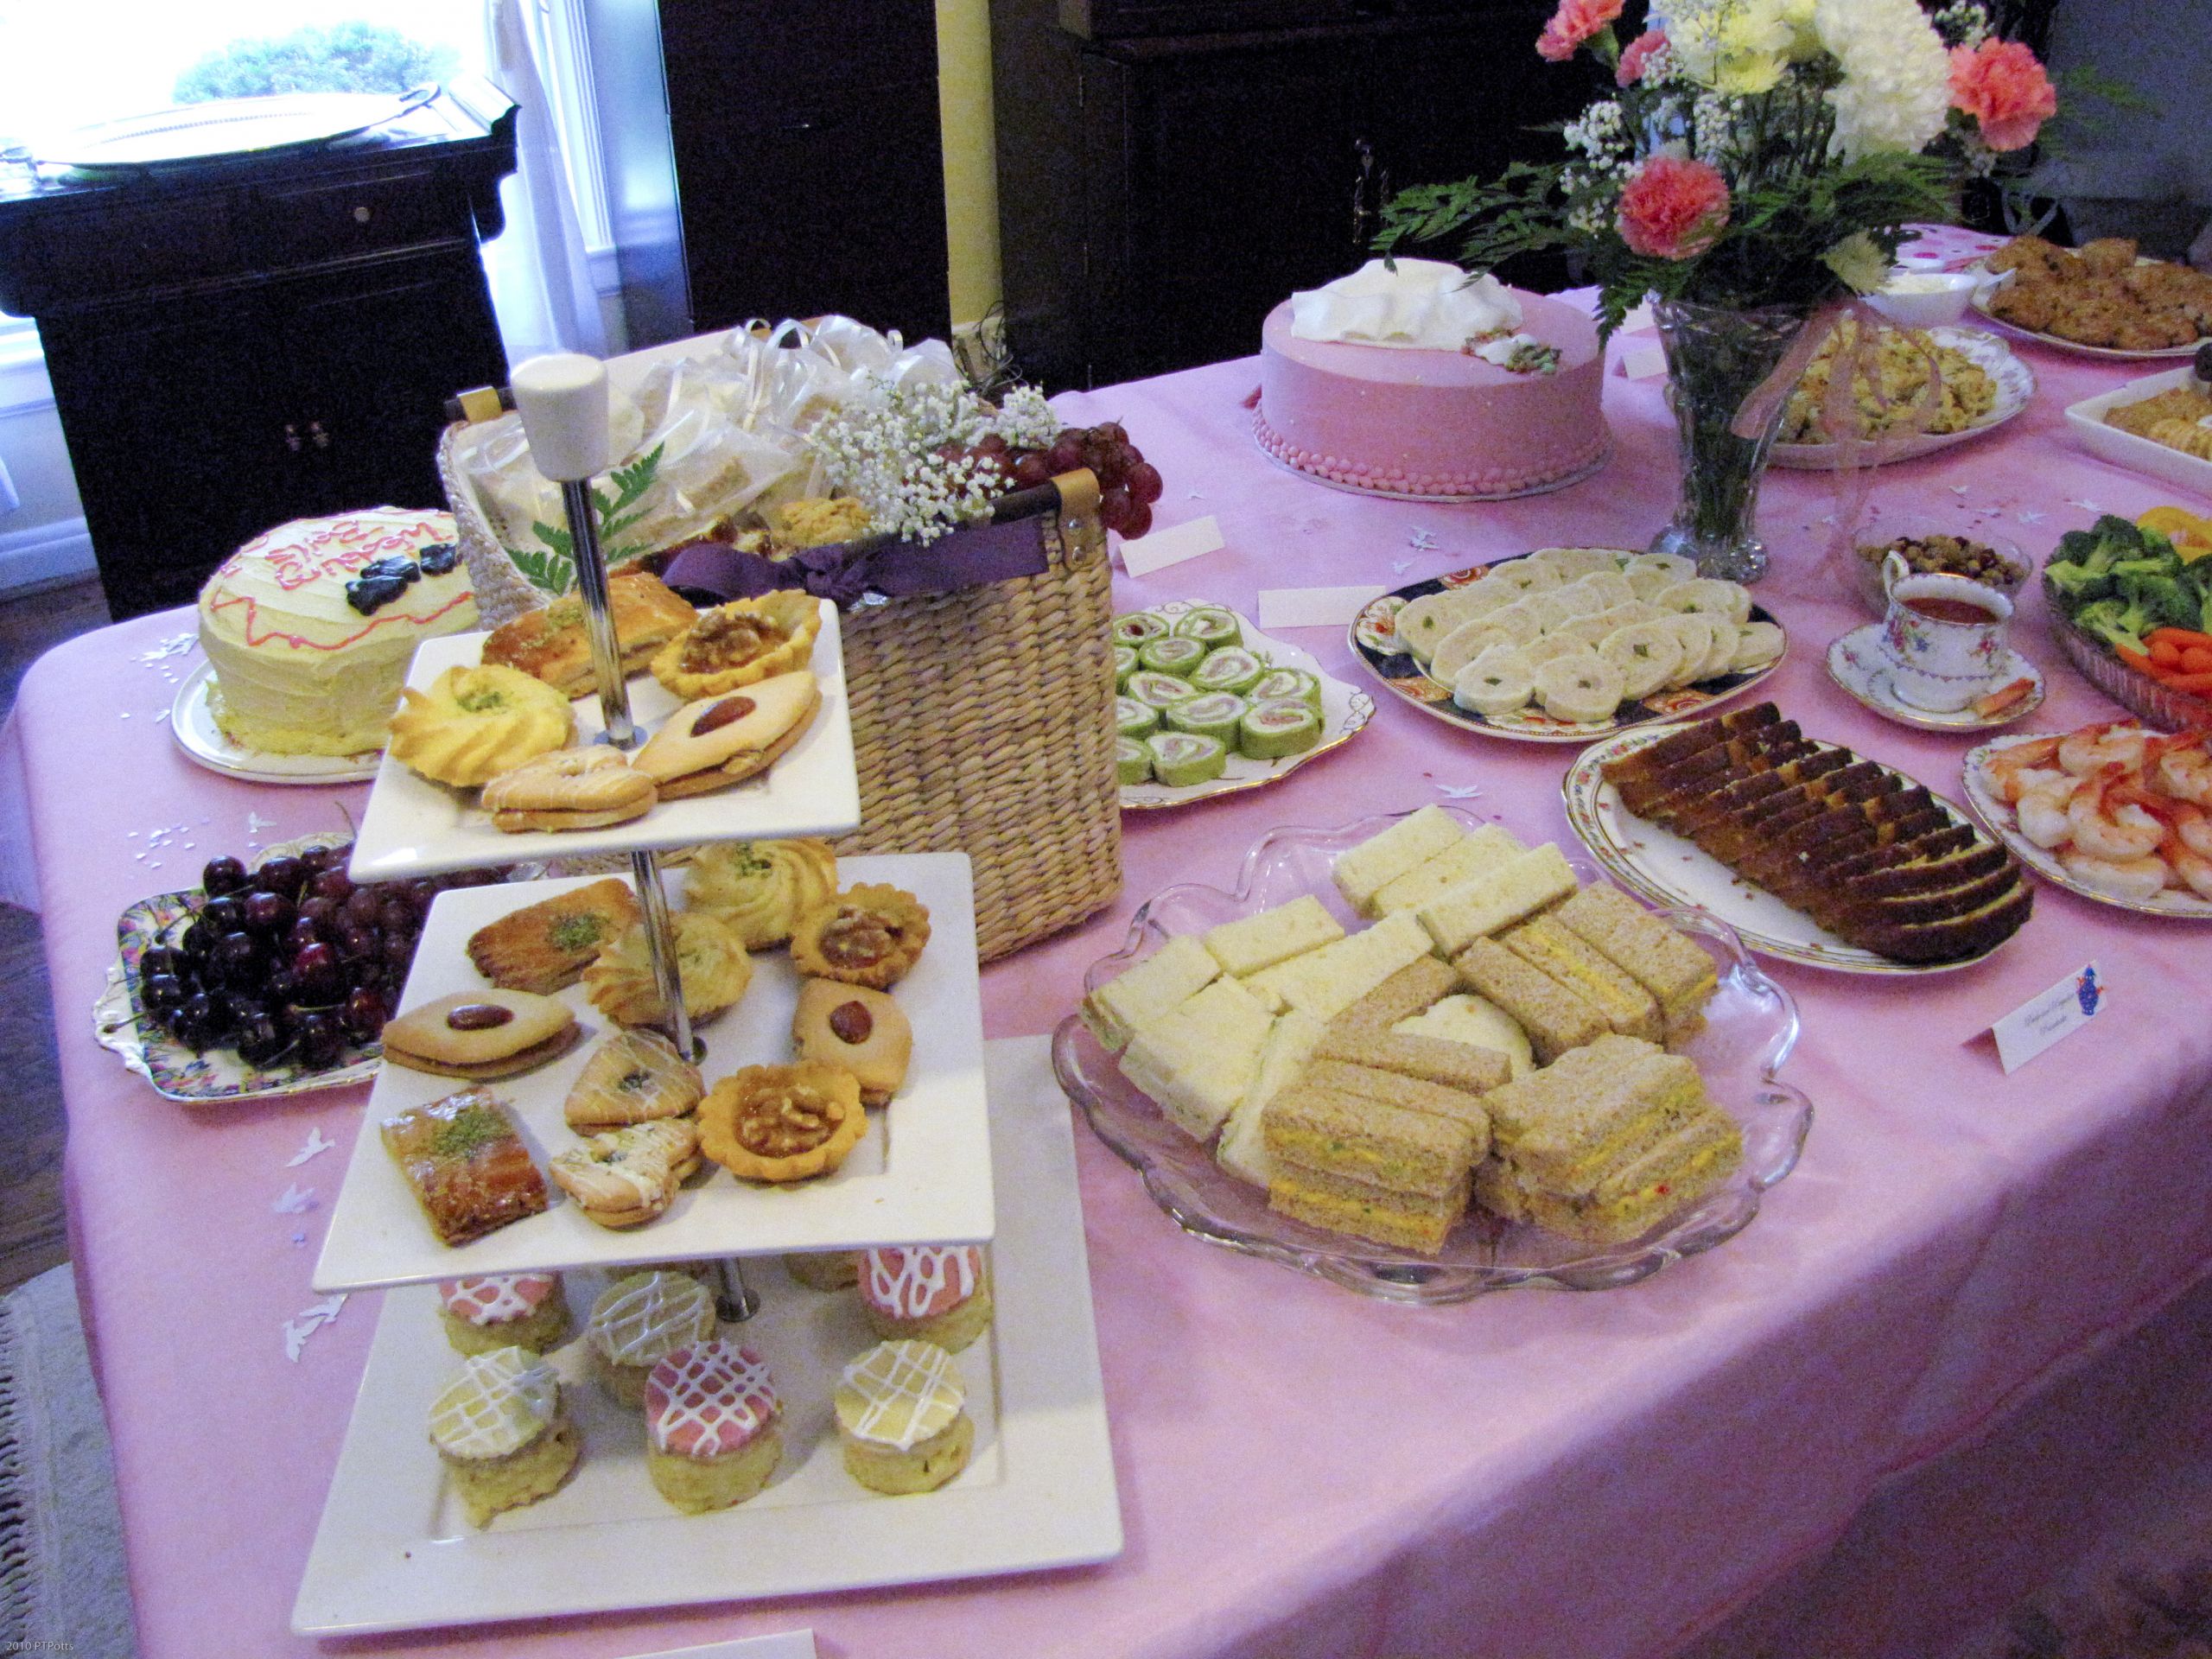 Tea Party Ideas For Bridal Shower
 A Jane Austen Tea Party Bridal Shower